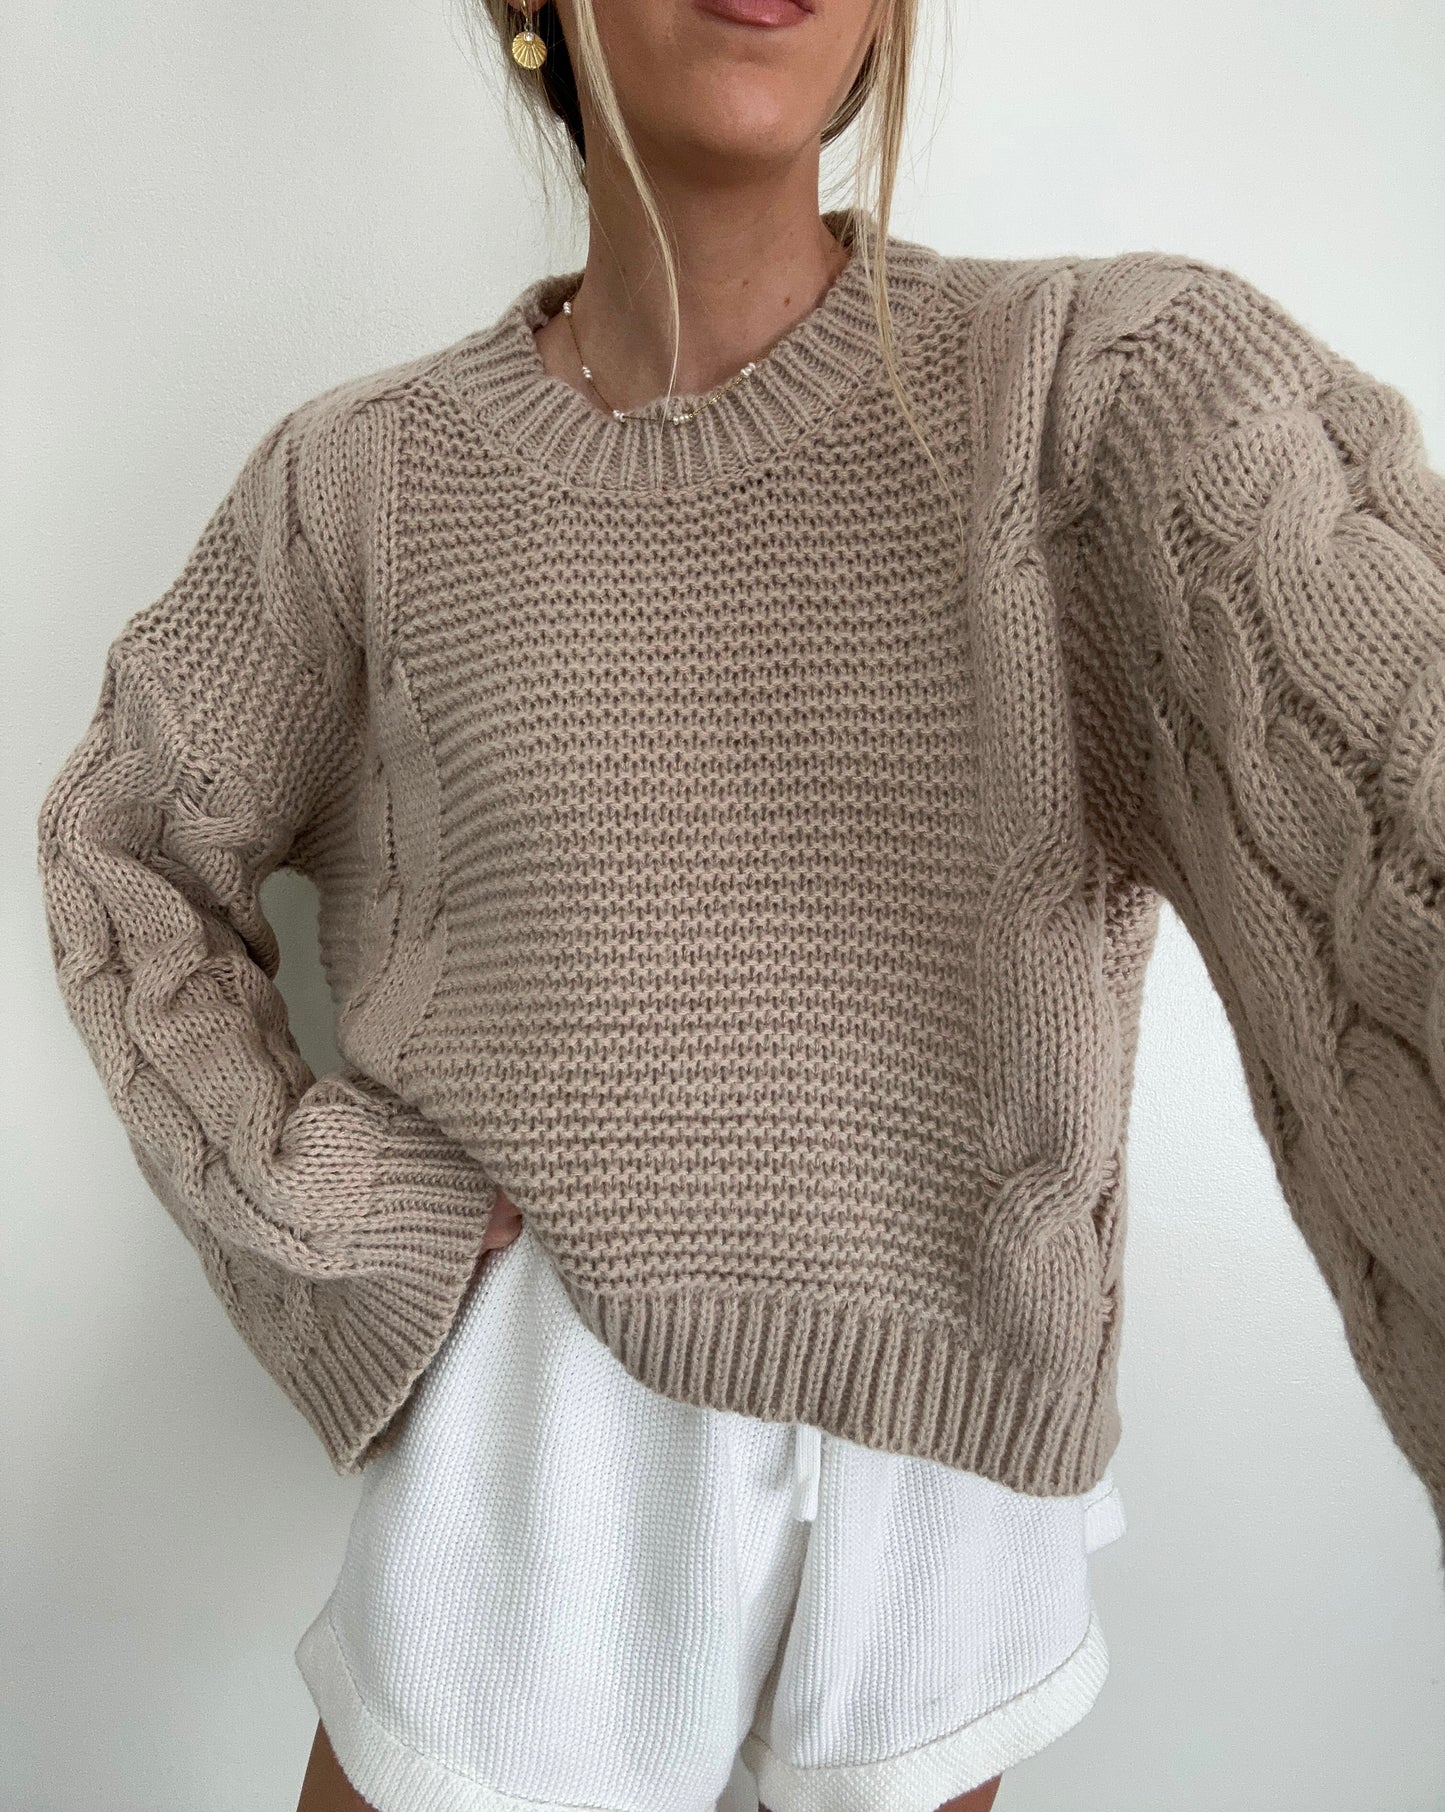 Gretchen Sweater